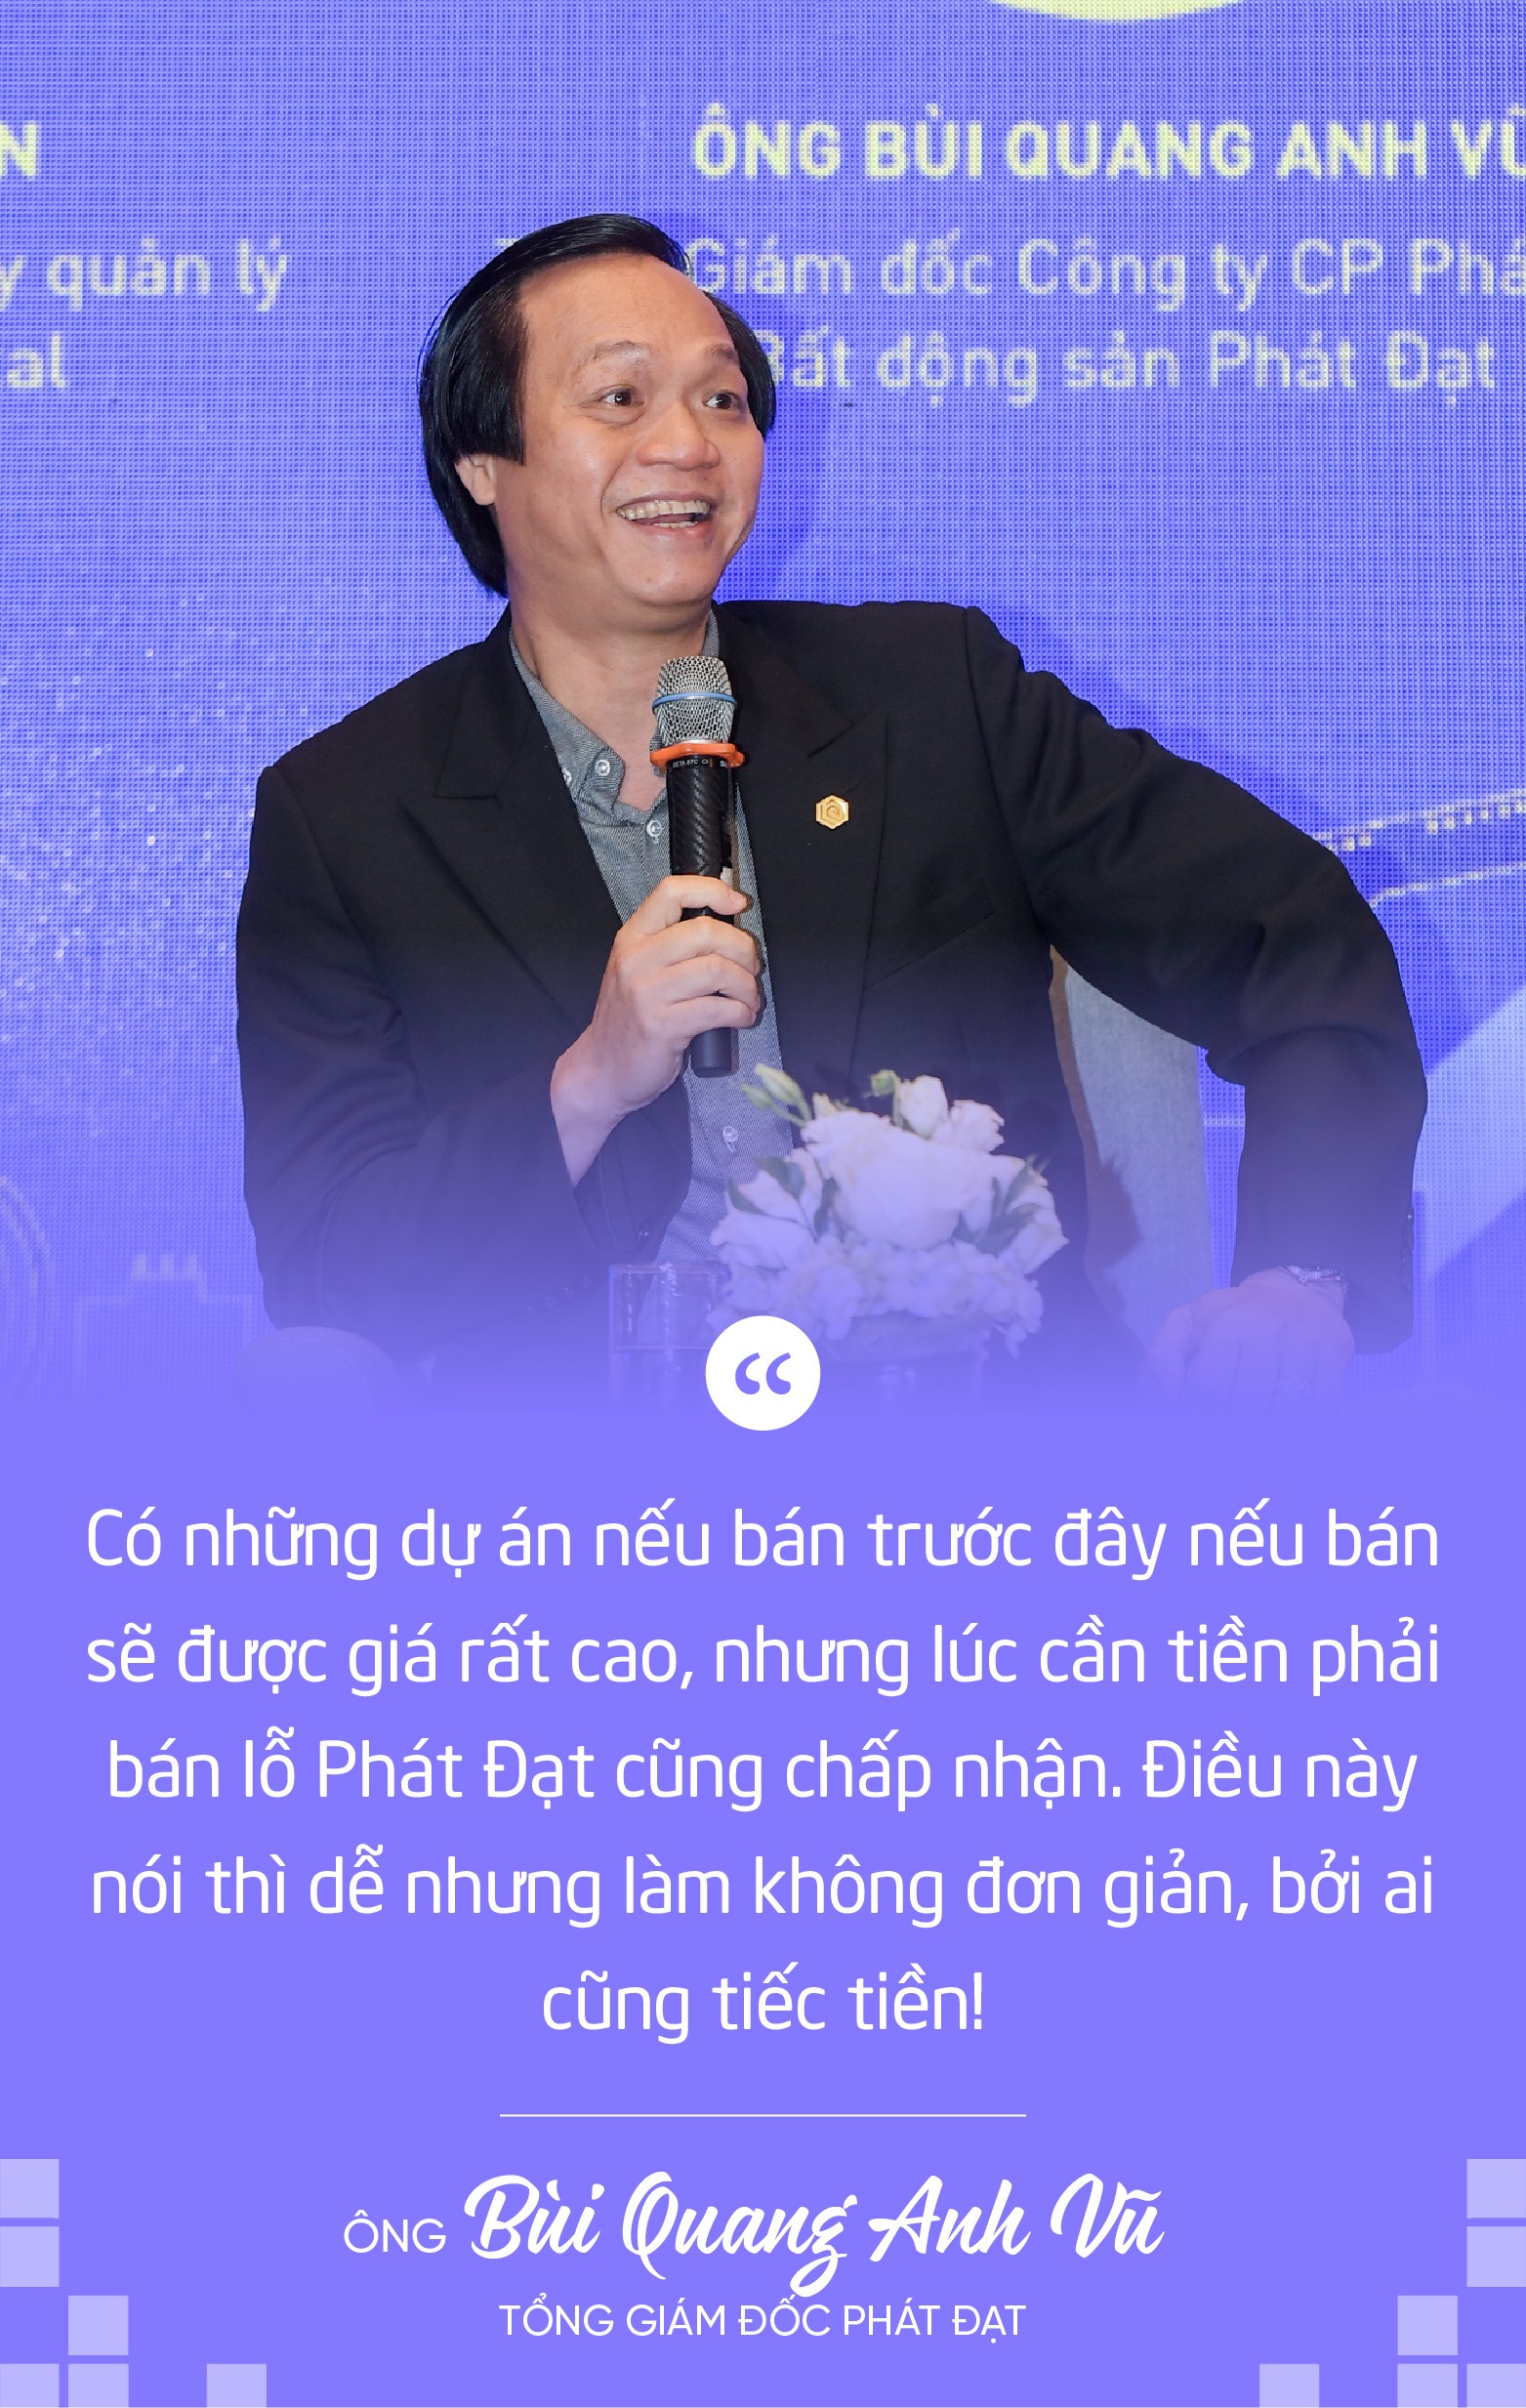 CEO Phát Đạt tiết lộ bí quyết giúp doanh nghiệp vượt qua khó khăn nhưng không phải ai cũng dám làm vì tiếc tiền - Ảnh 1.